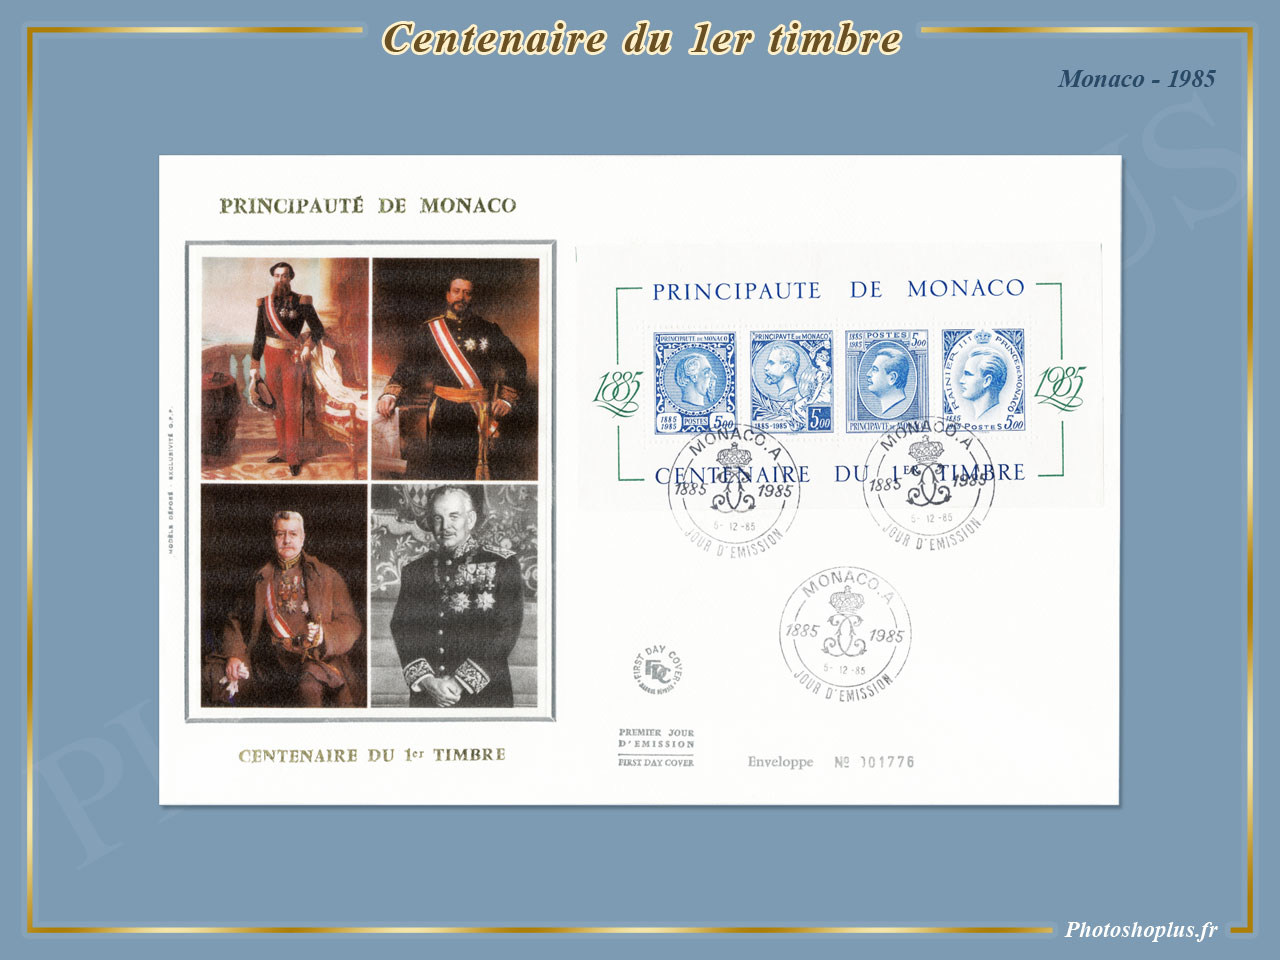 Centenaire du 1er timbre